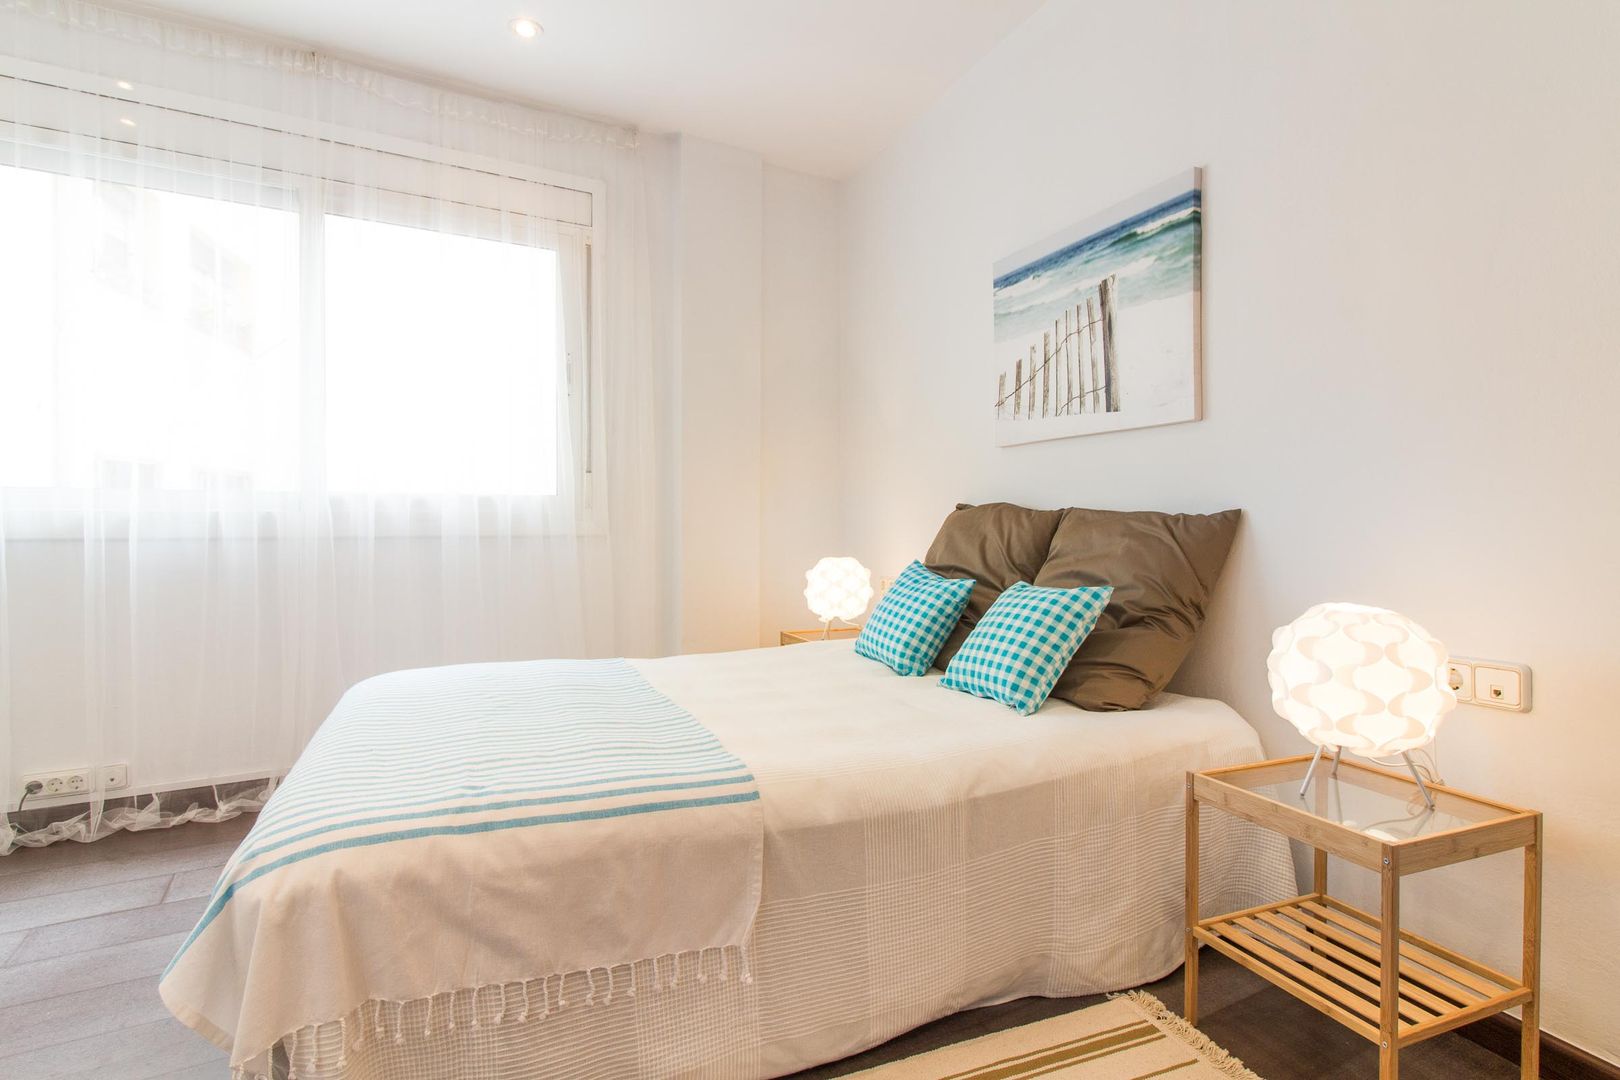 De oficina a vivienda mediante Home Staging en Barcelona, Impuls Home Staging en Barcelona Impuls Home Staging en Barcelona Modern style bedroom